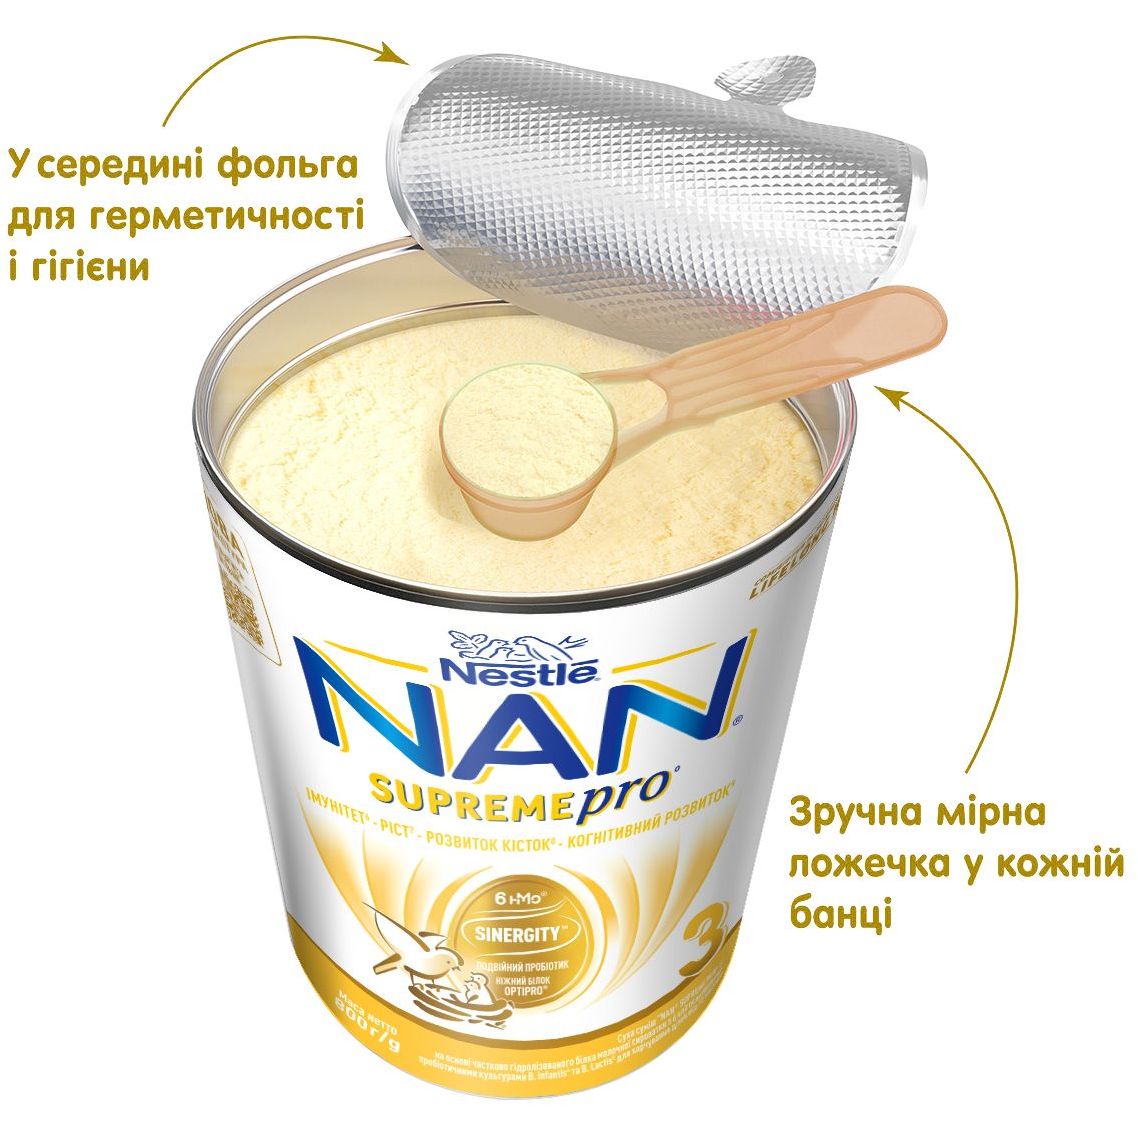 Суха суміш NAN 3 Supreme Pro з 6 олігосахаридами та подвійним пробіотиком для харчування дітей від 12 місяців 800 г - фото 7